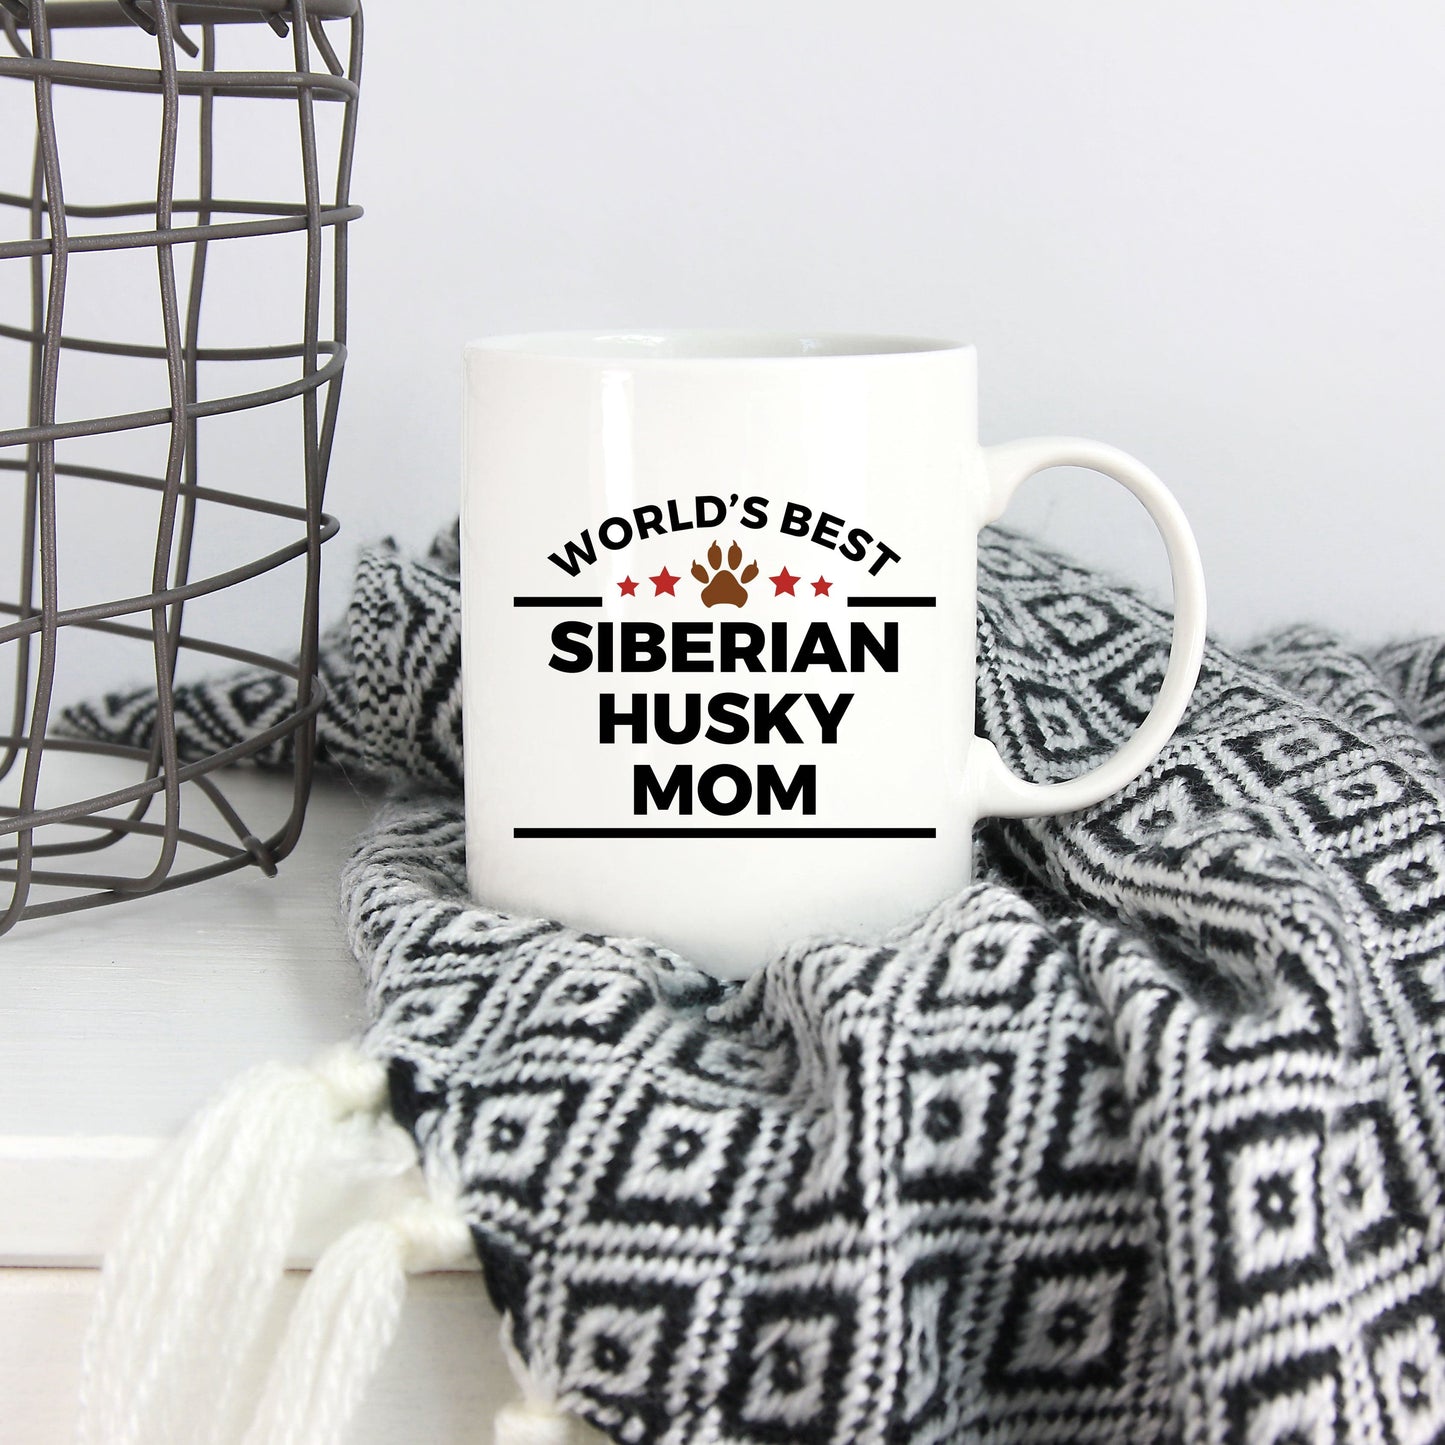 Siberian Husky Dog Mom Coffee Mug